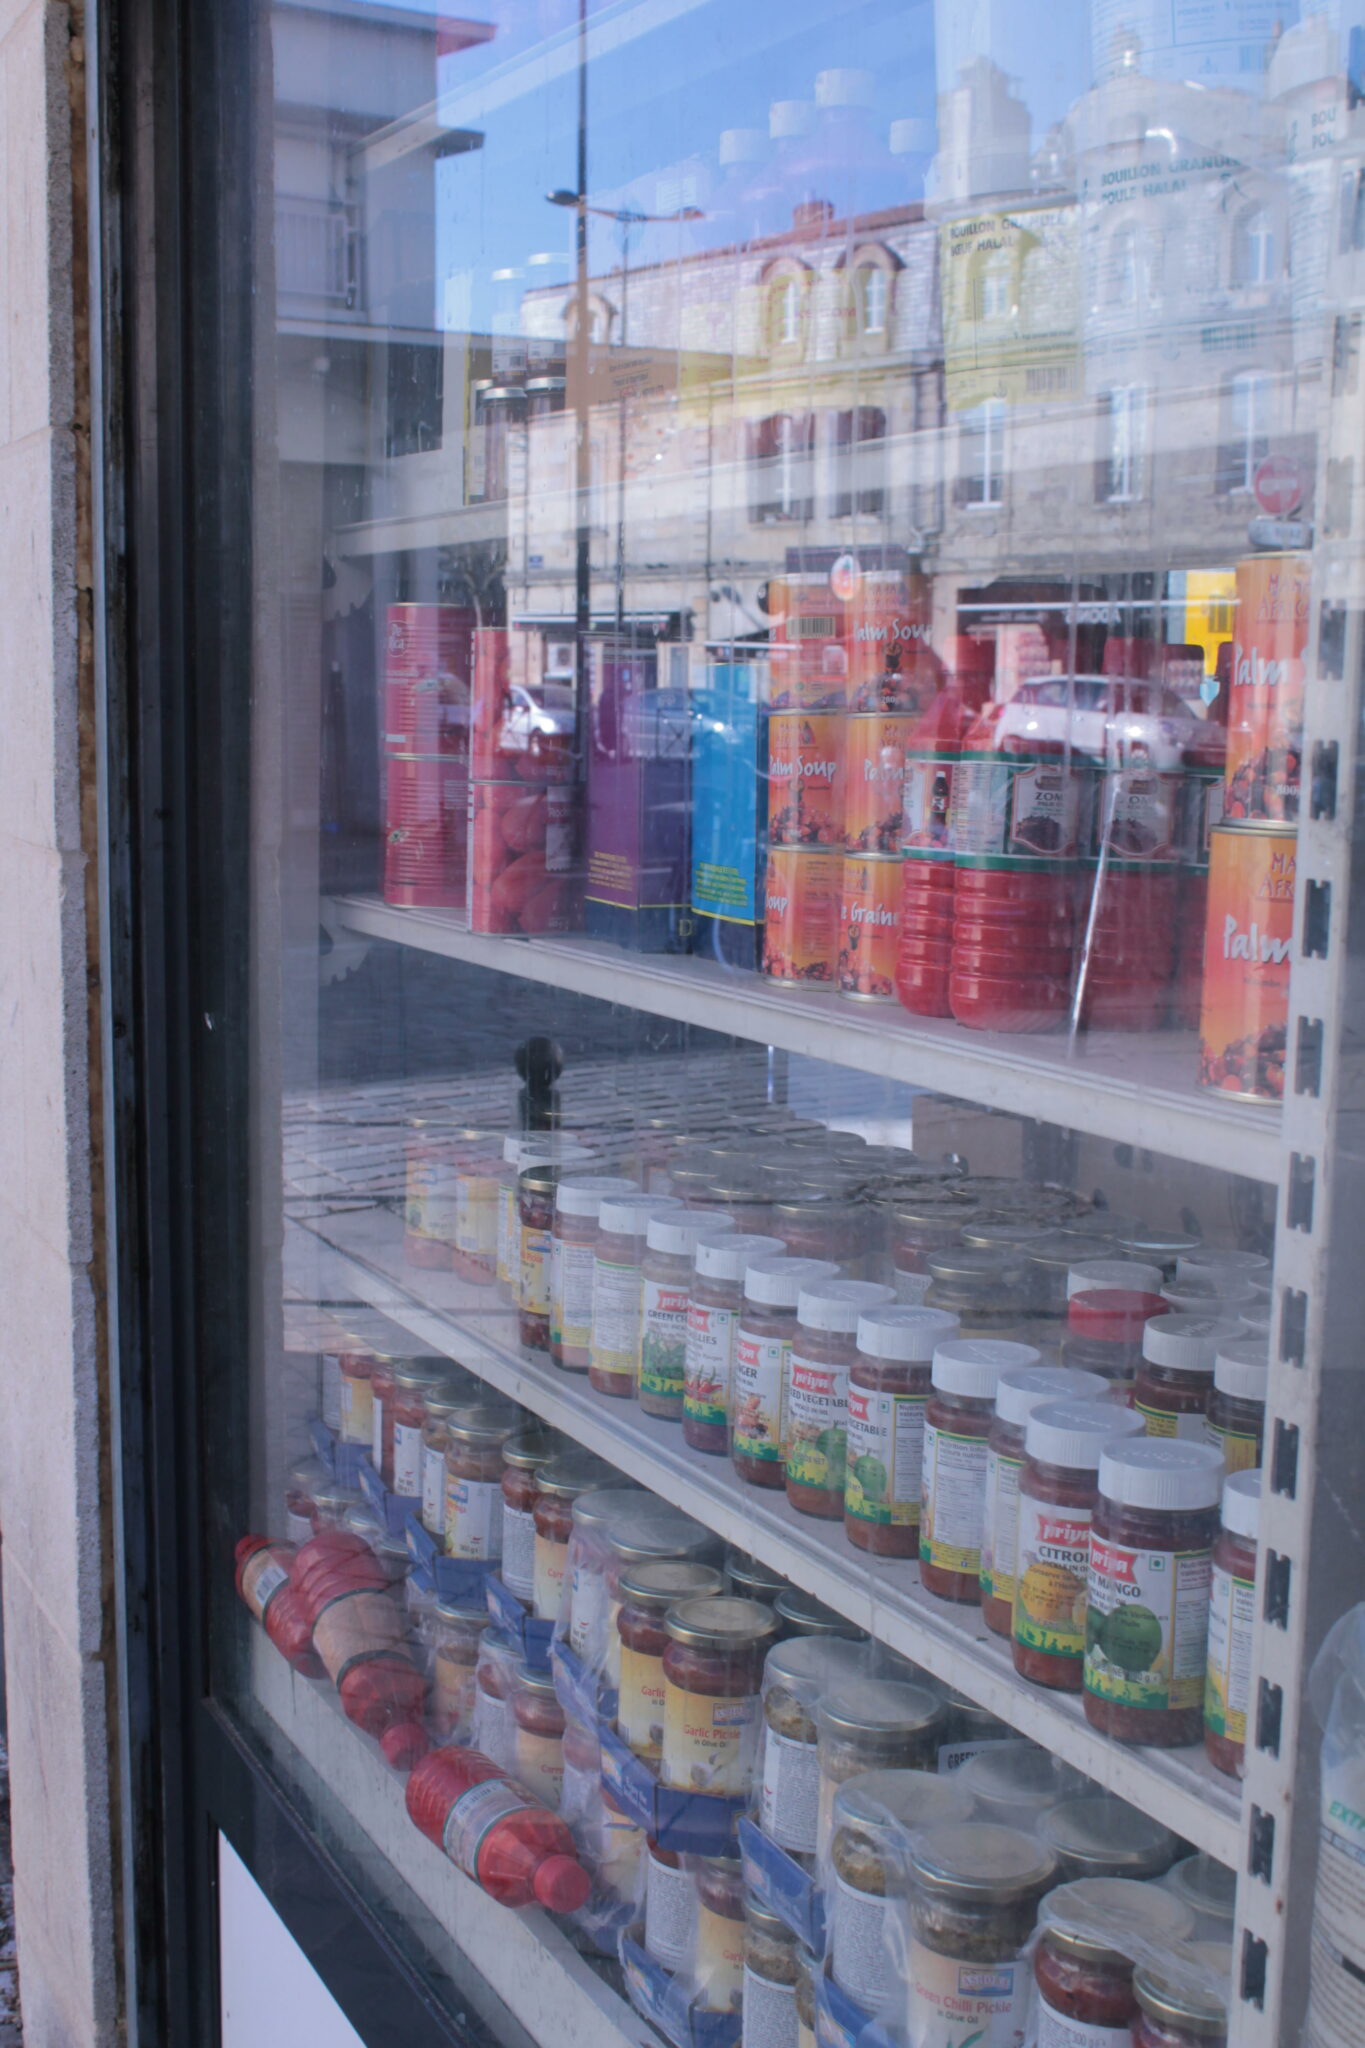 Dans les vitrines des boutiques alentour, on trouve exclusivement des produits alimentaires d’ici et d’ailleurs. L’objectif essentiel dans ce quartier, nourrir la population locale.